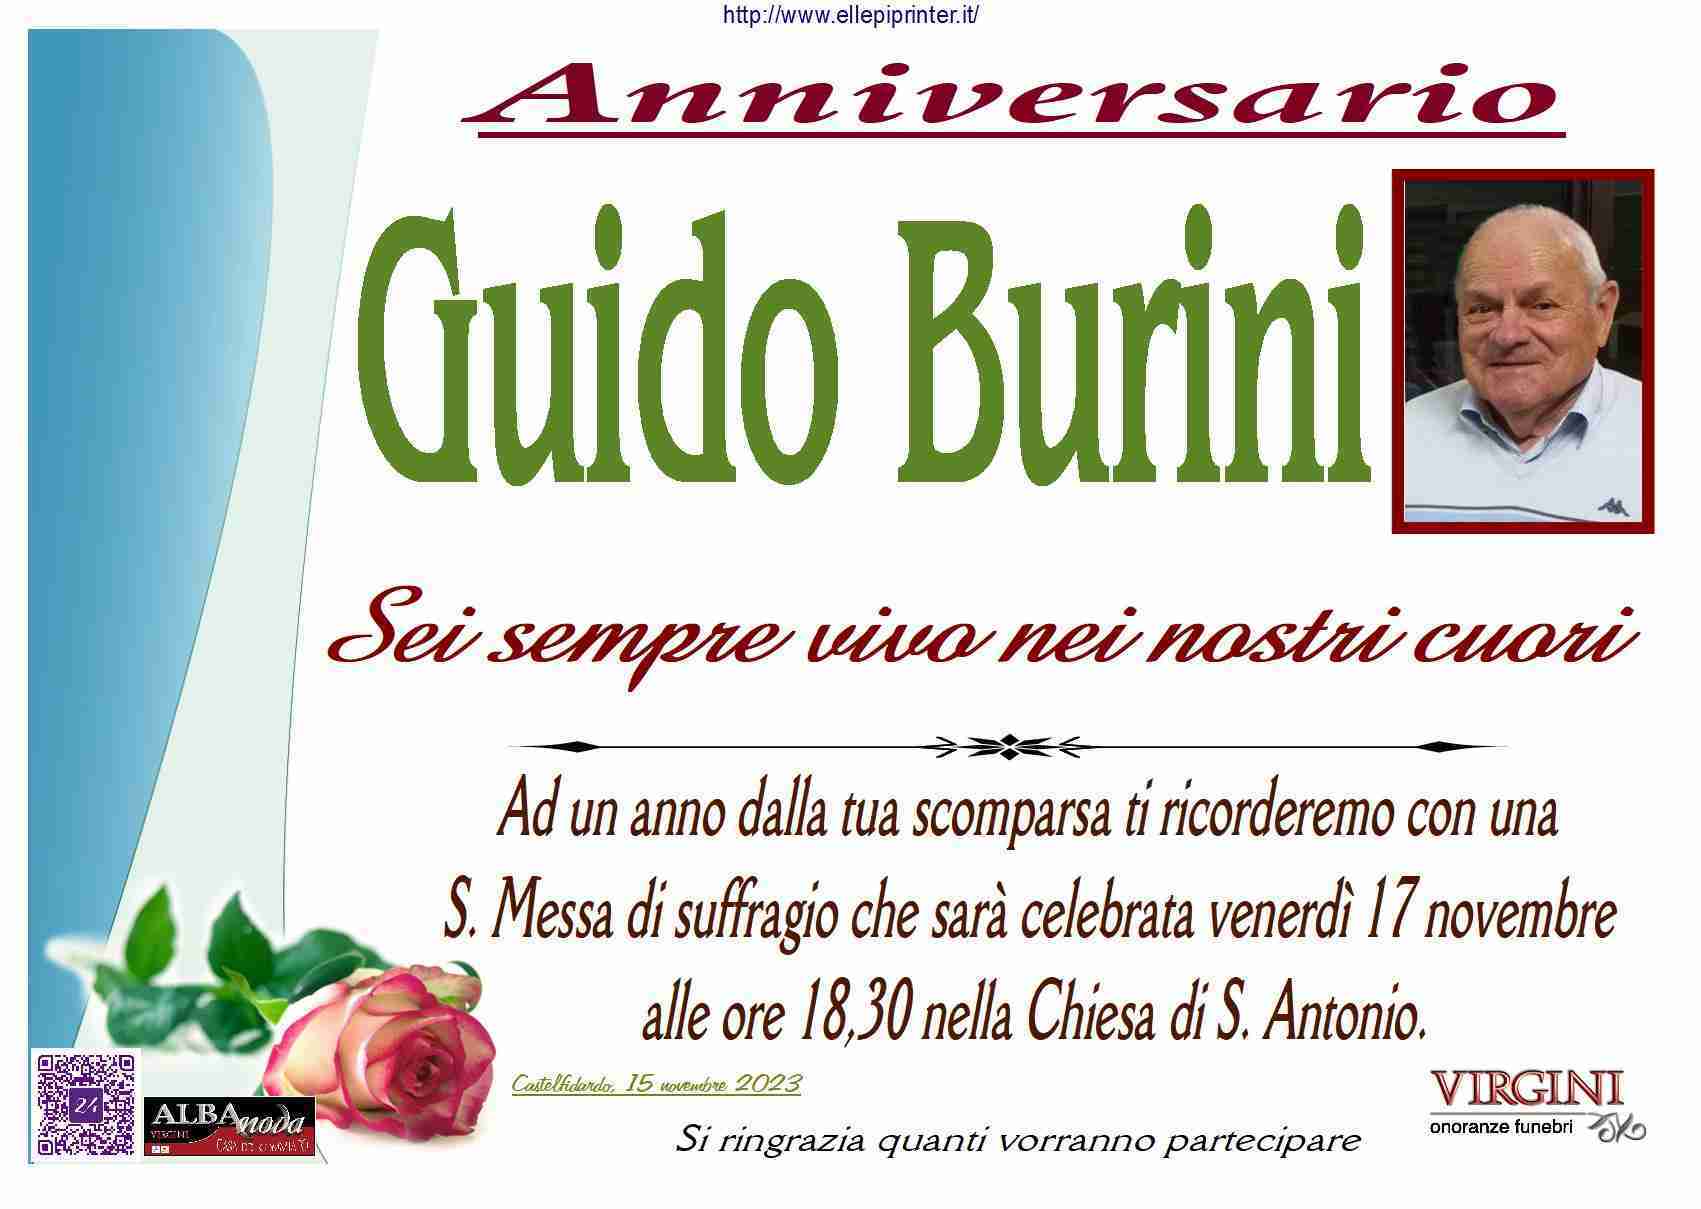 Guido Burini